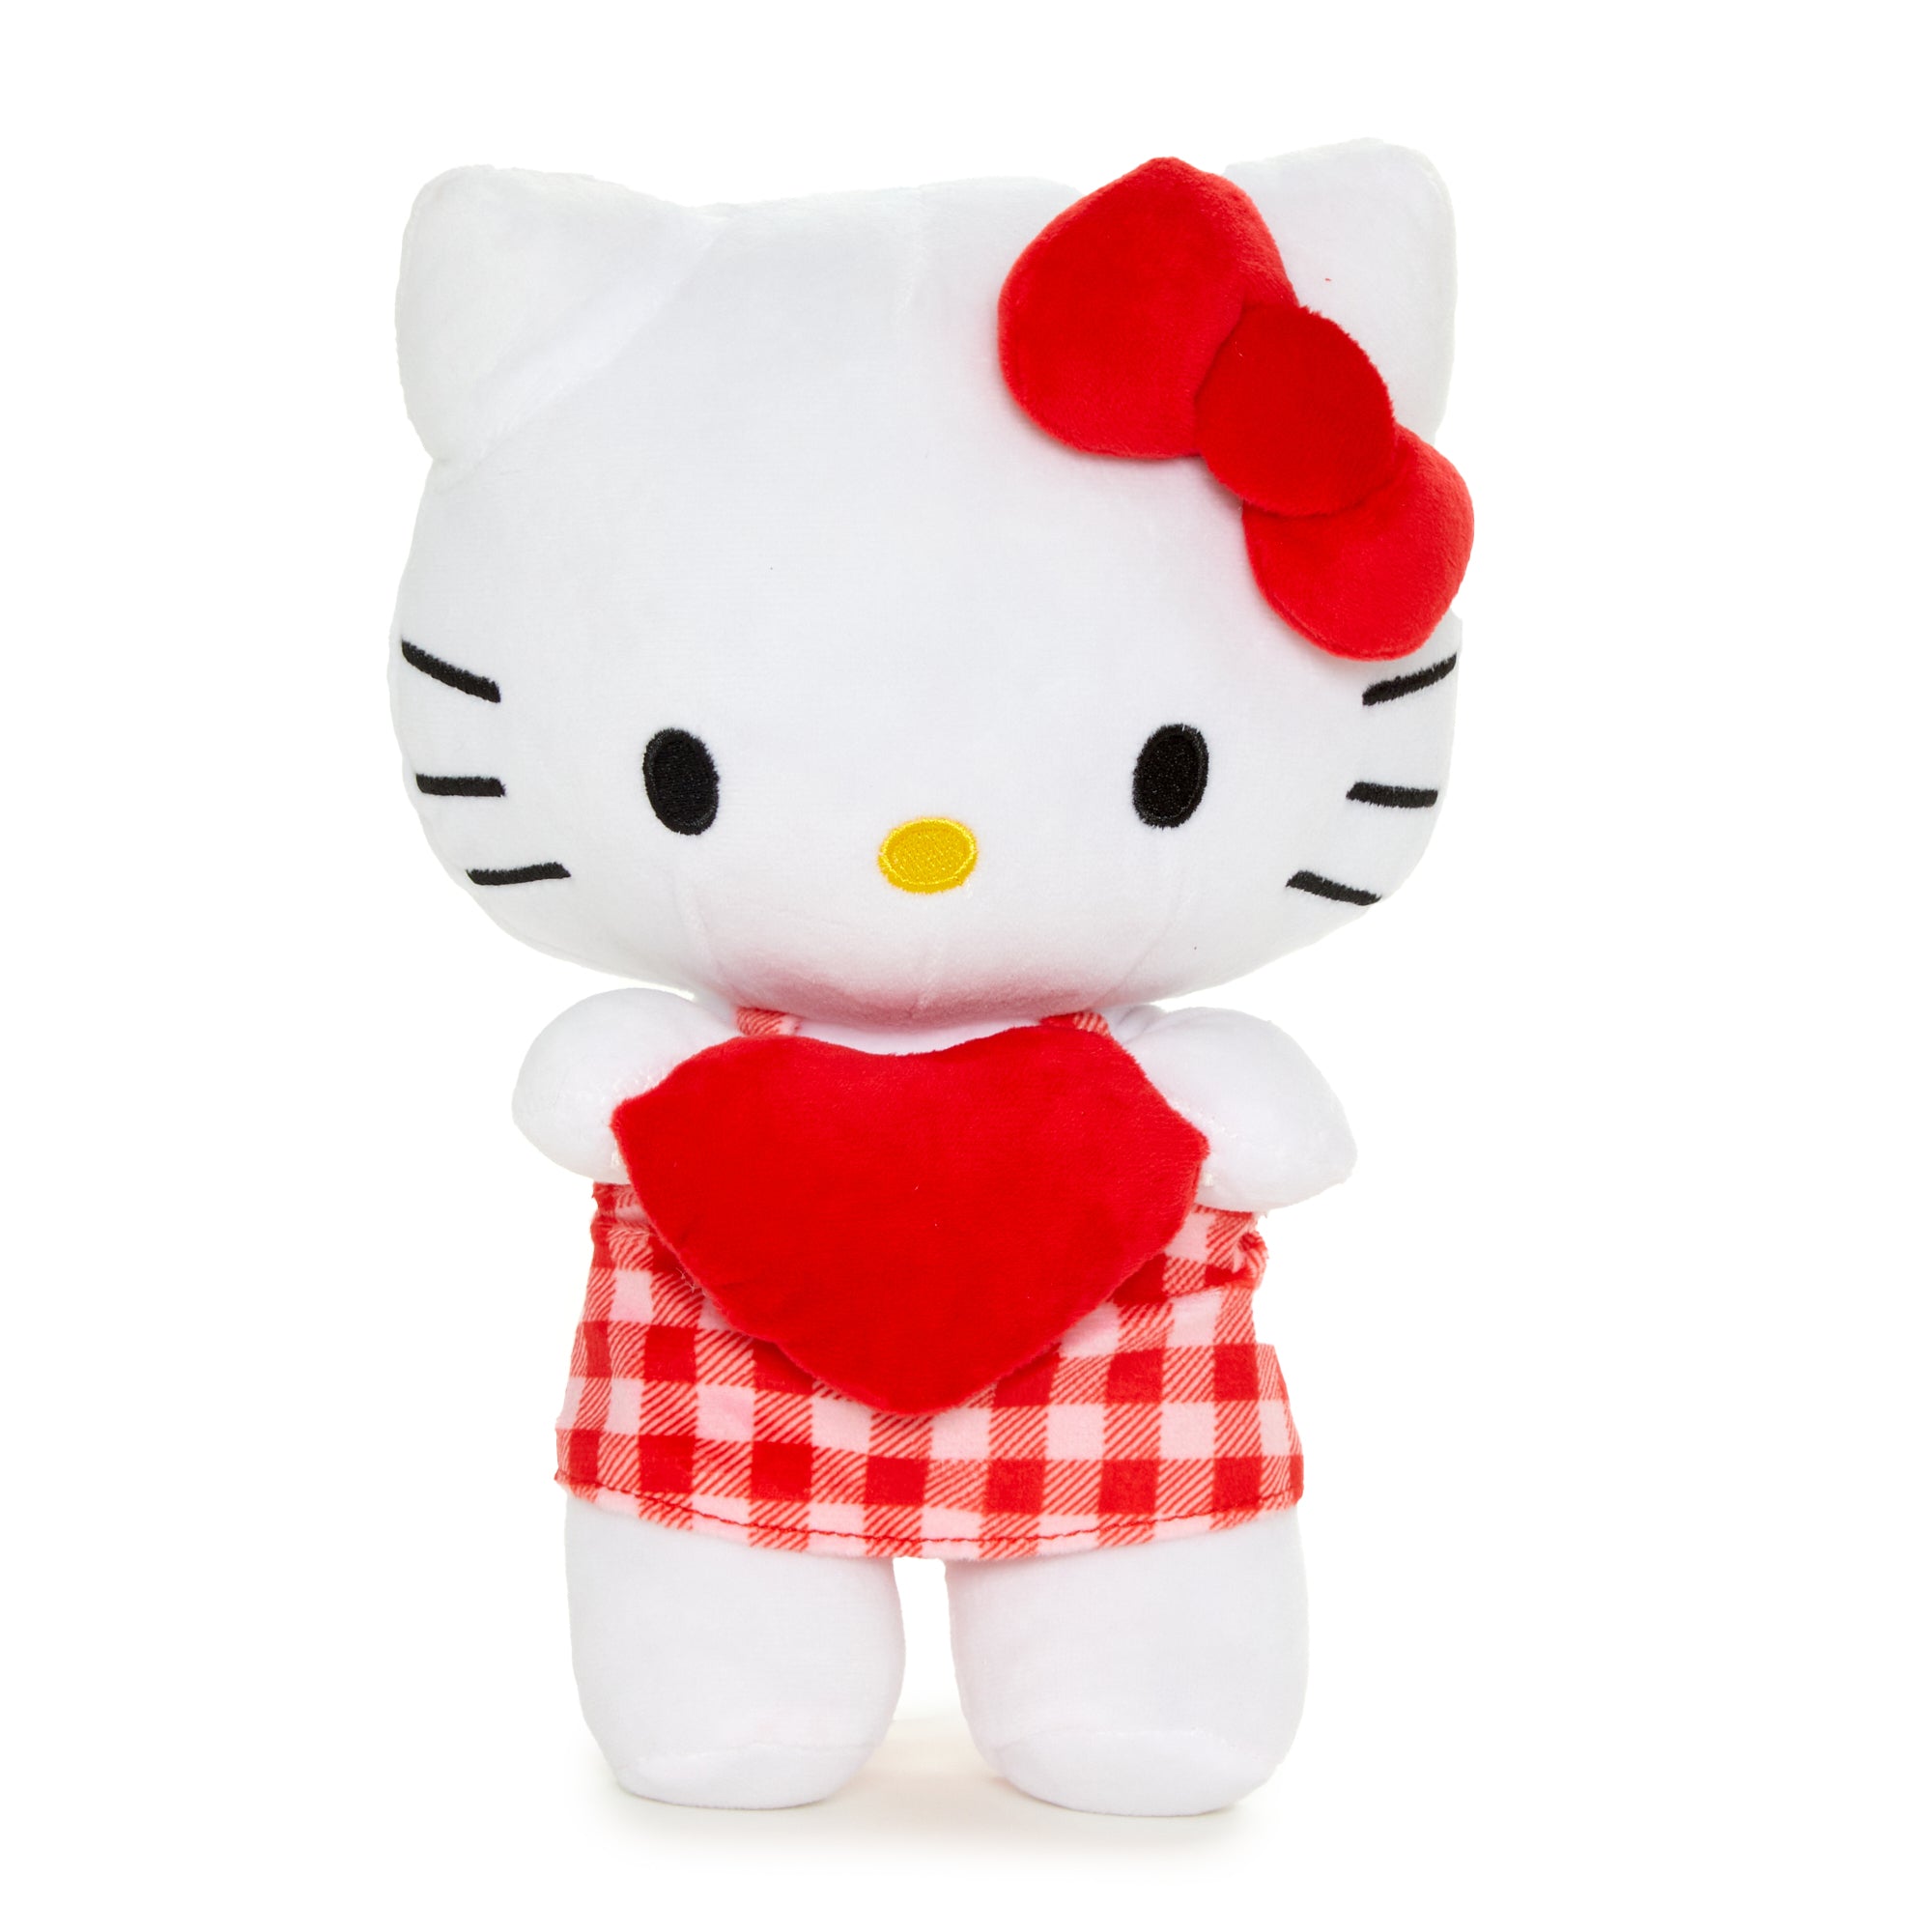 Sanrio bloc-notes personnalisé Hello Kitty Dauphin accessoire 80RJX640  [80RJX640] : Mode Sanrio Vêtements & Sanrio France, Livraison rapide et  retour gratuit.